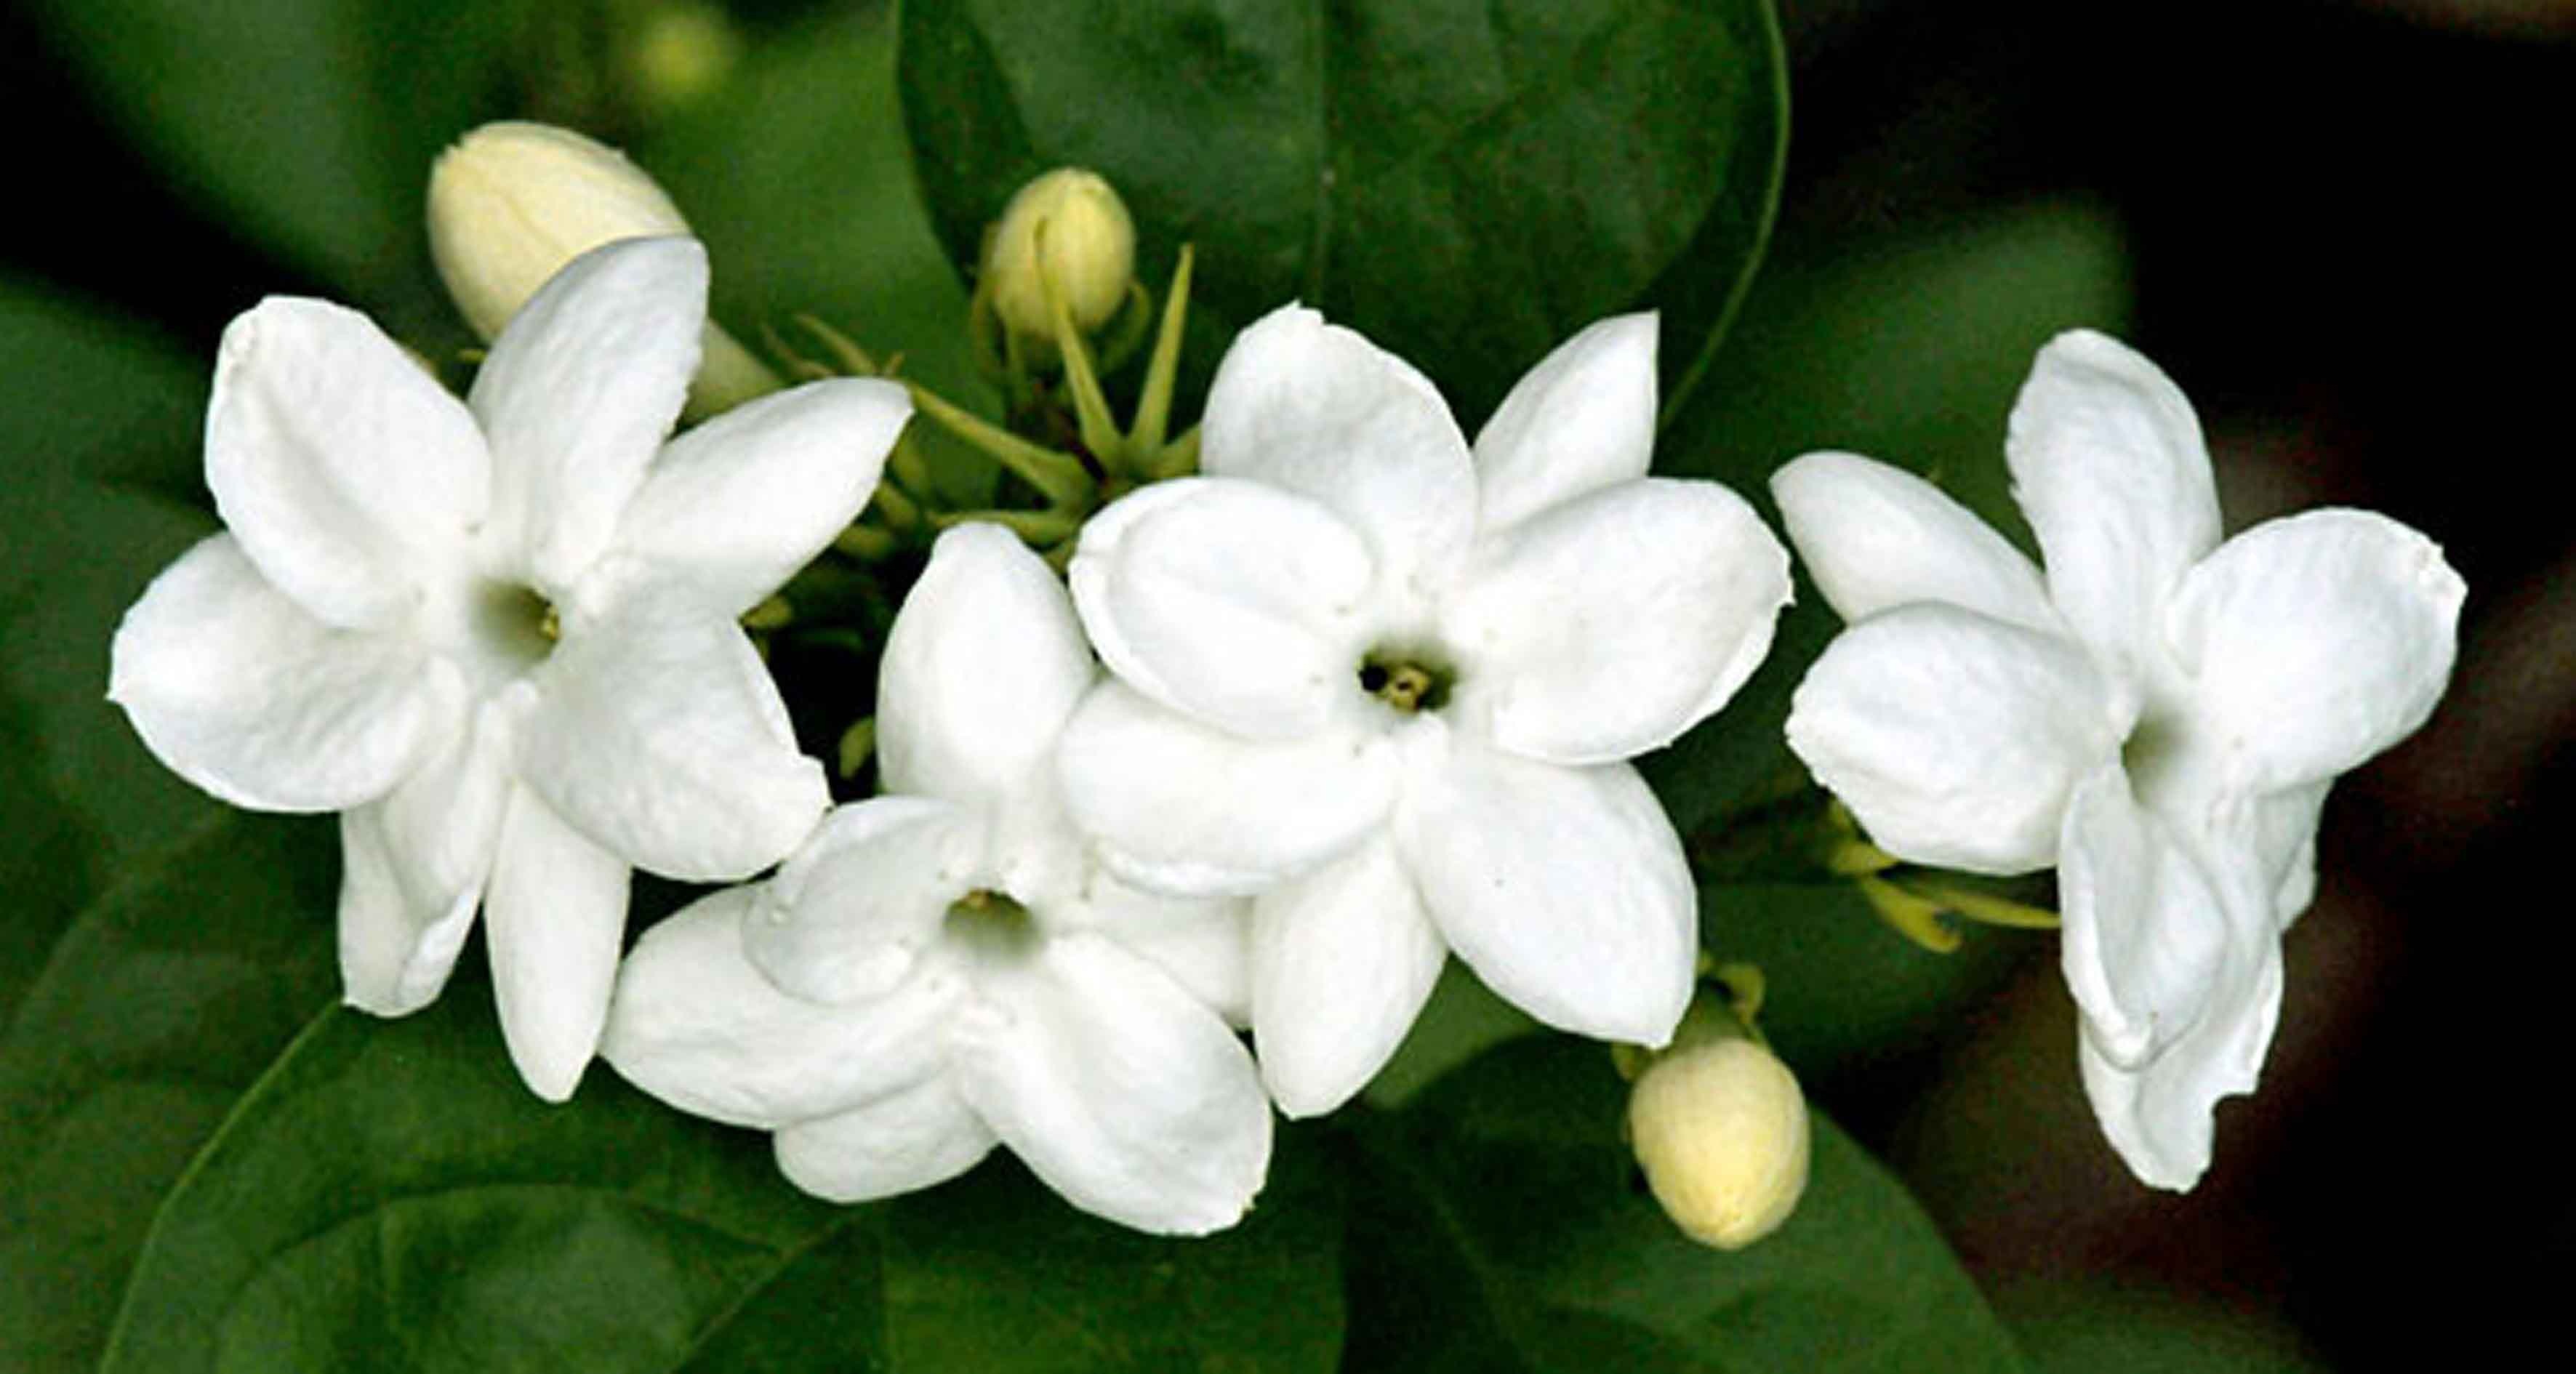 Gambar Bunga Melati Putih Gambar Top Gambartopcom